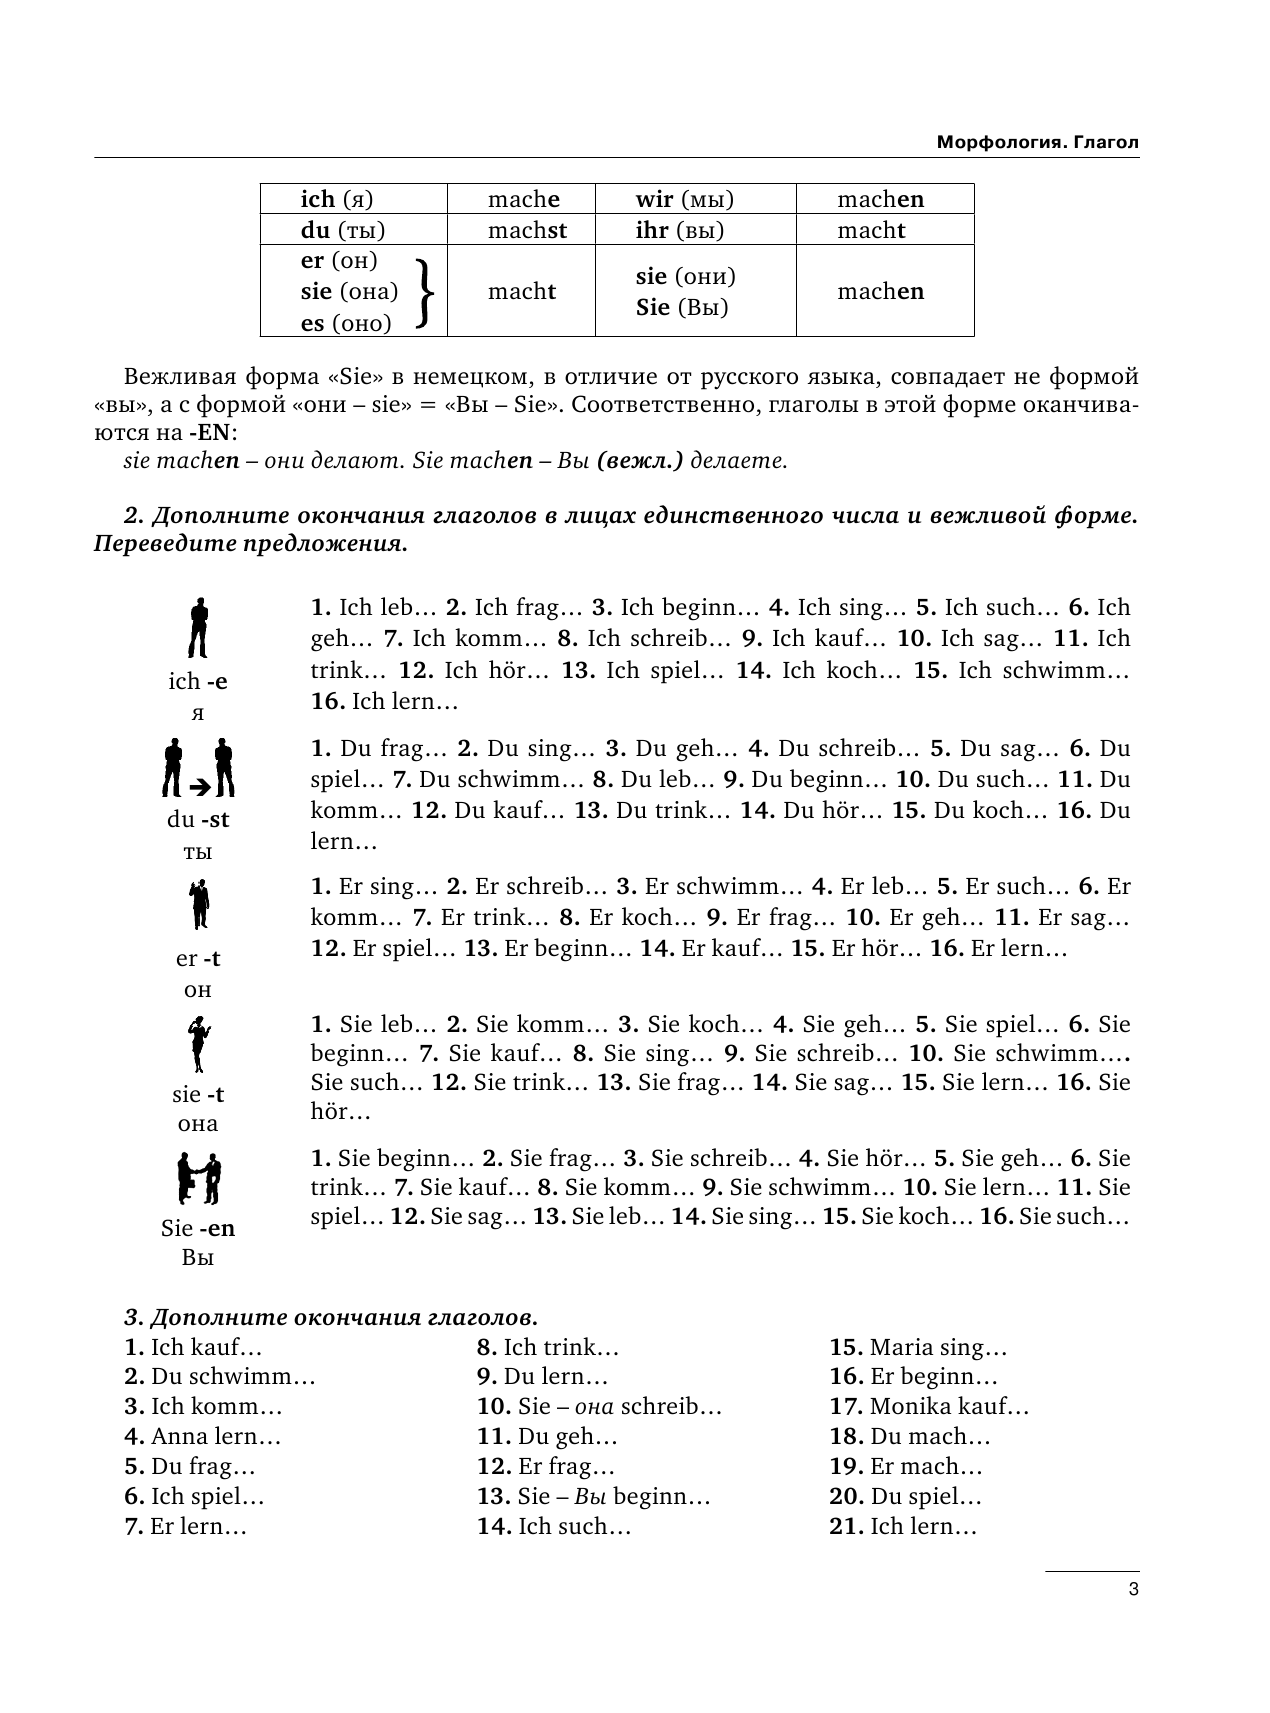 Листвин Денис Алексеевич Deutsche Grammatik. Грамматика немецкого языка - страница 4